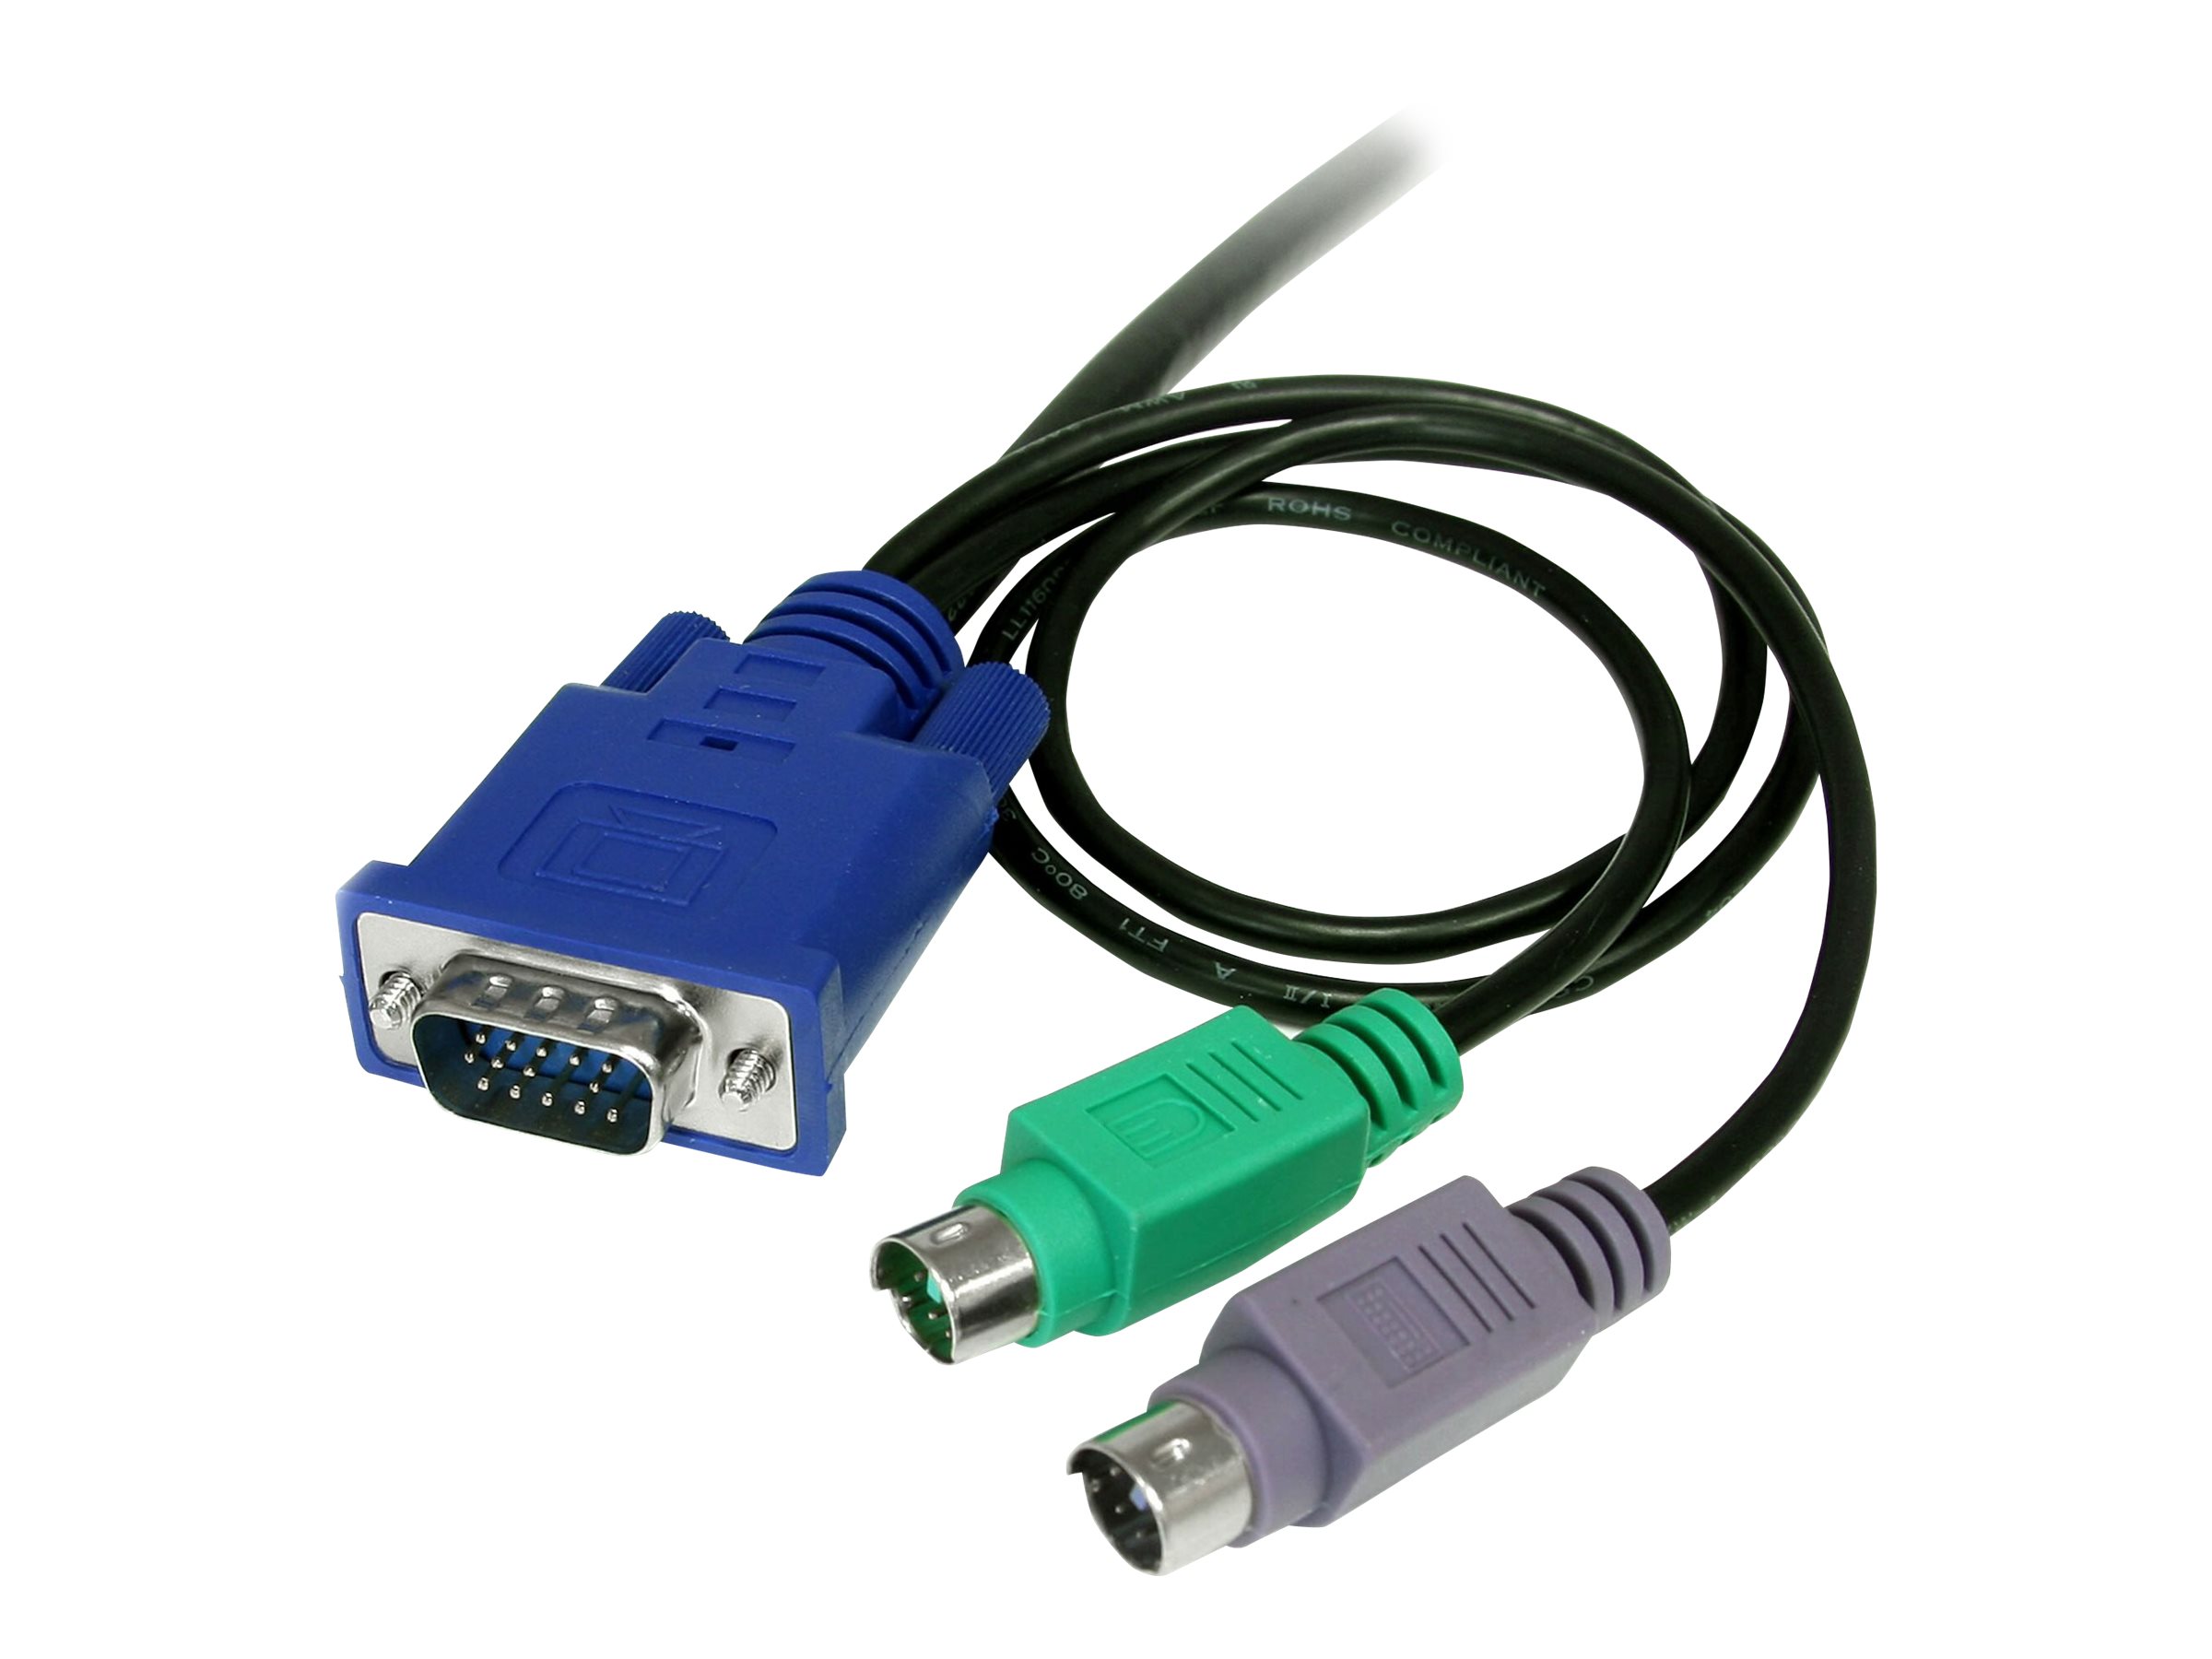 StarTech.com 1,8m 3-in-1 PS/2 VGA KVM Kabel - Kabelsatz fr KVM Switch / Umschalter - Tastatur- / Video- / Maus- (KVM-) Kabel - 